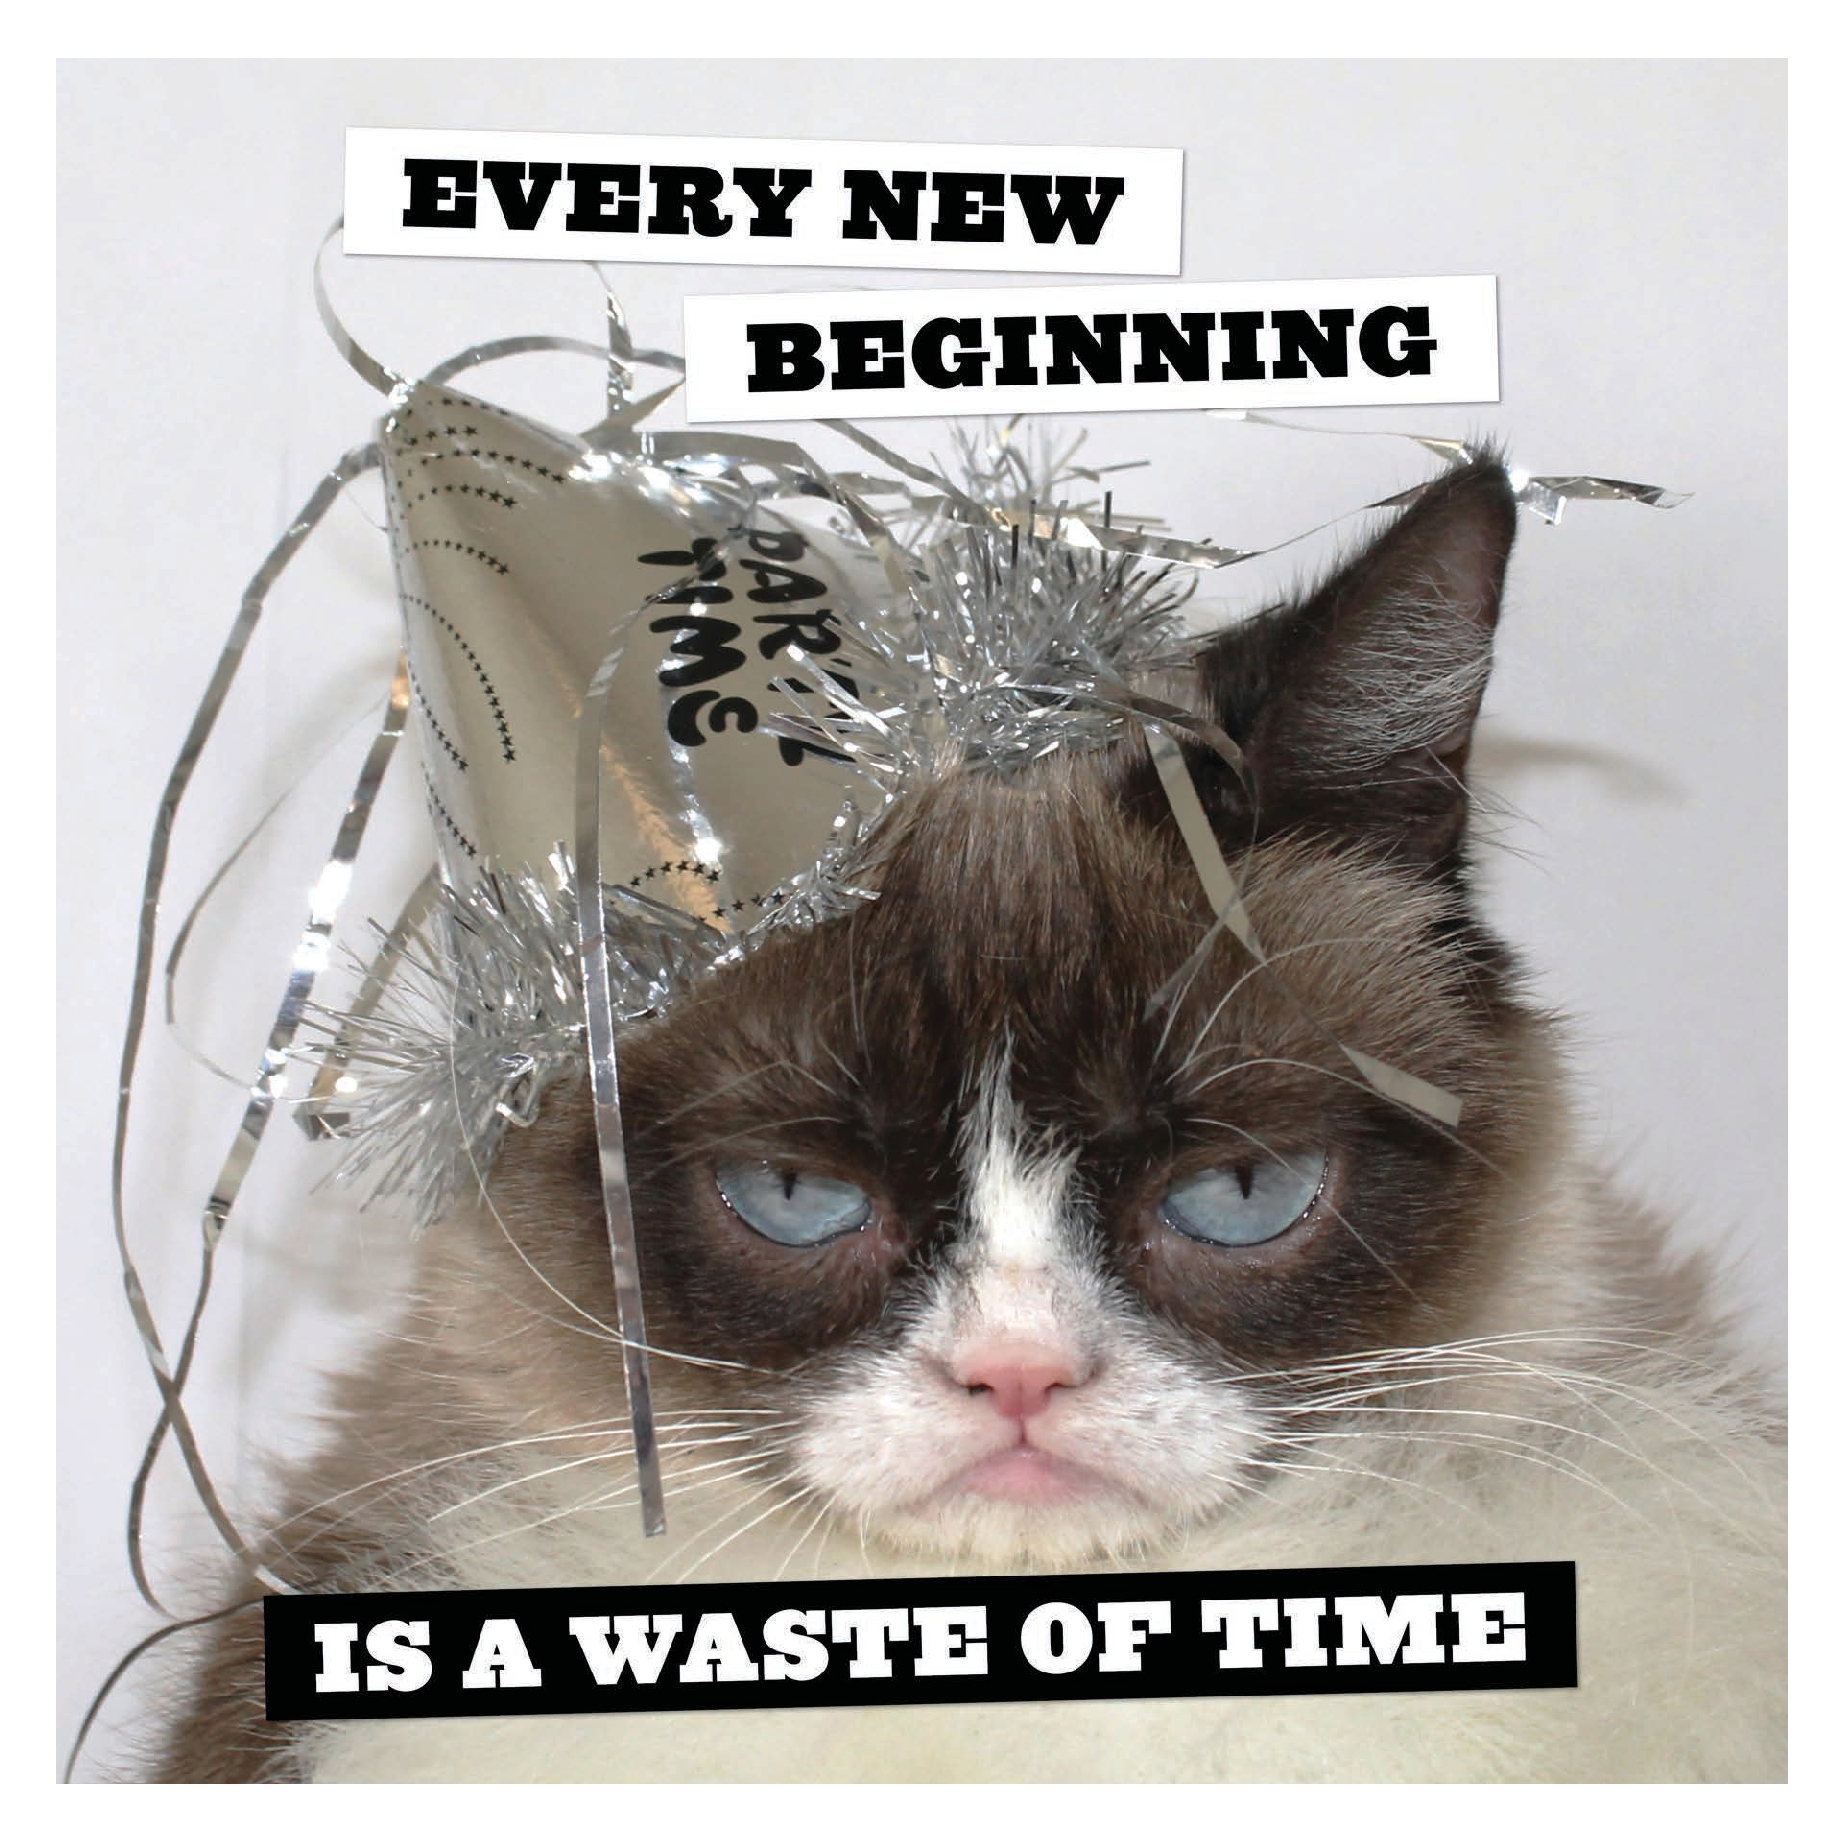 Grumpy Cat 2025 Wall Calendar